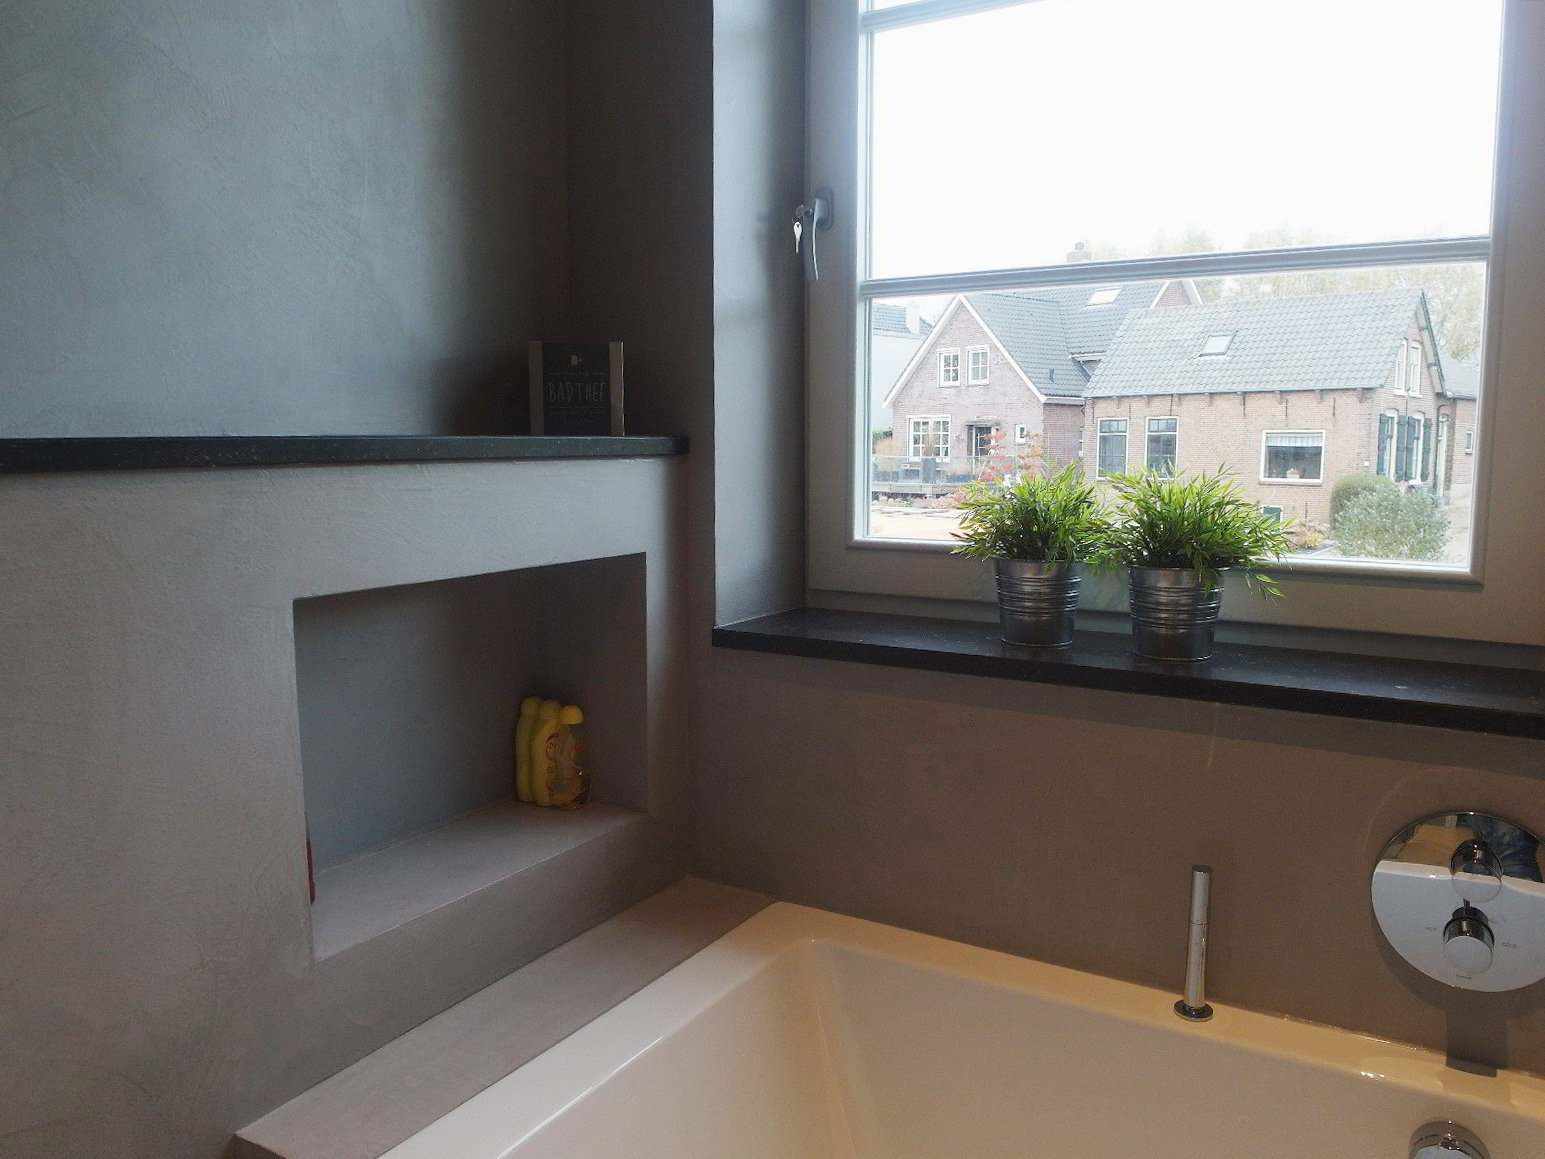 Microcemento en la pared, el suelo y el mueble de un baño en Holanda en el proyecto Decas.